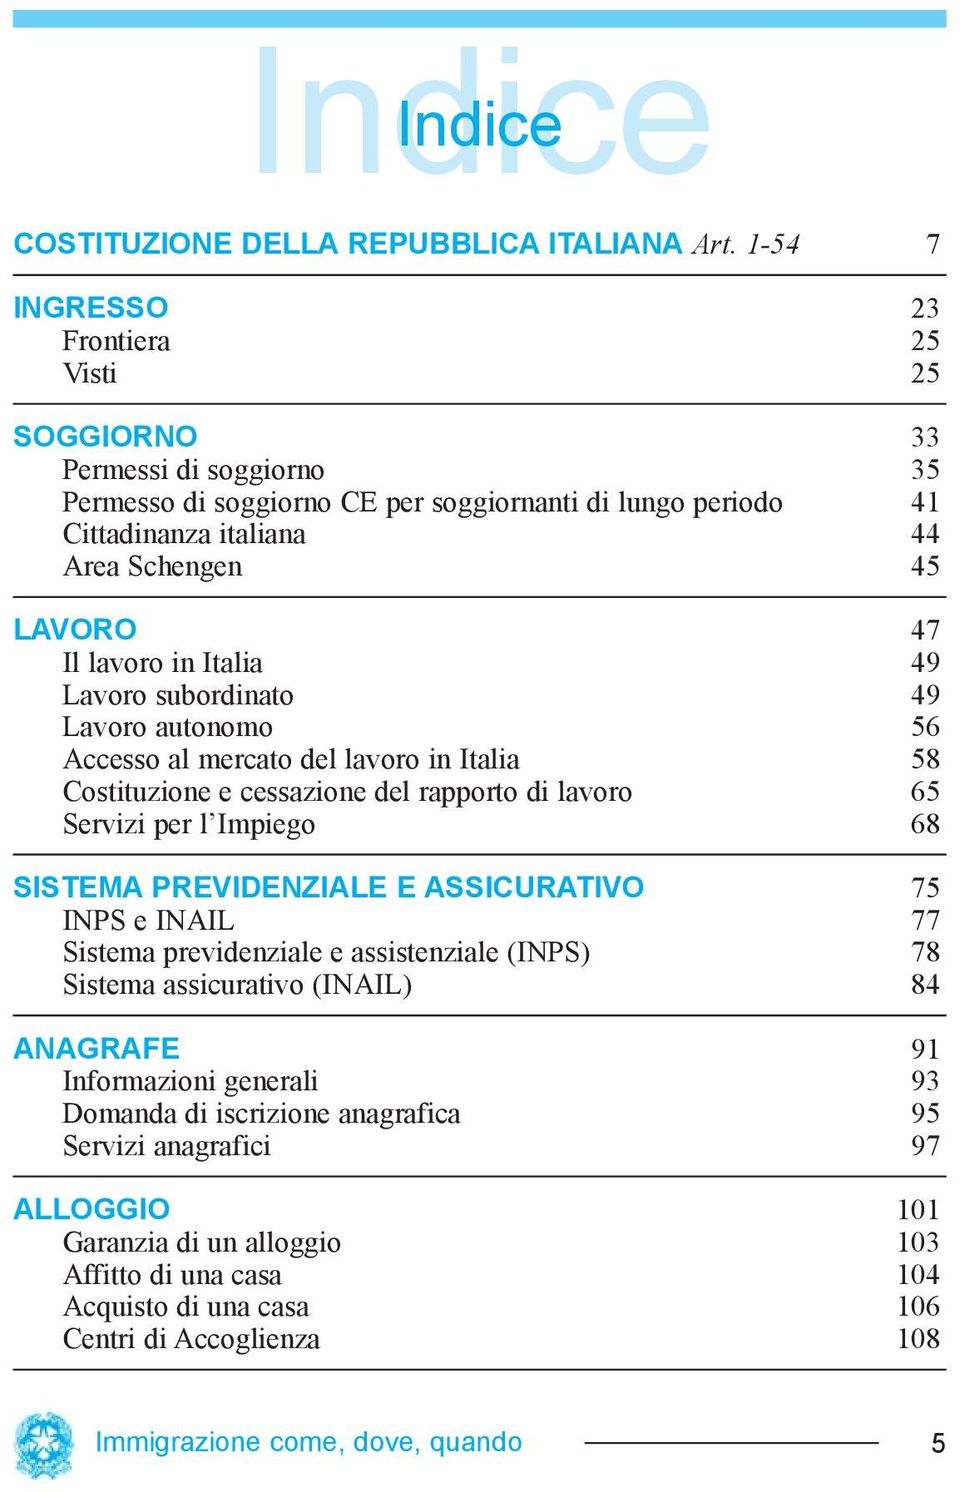 lavoro in Italia 49 Lavoro subordinato 49 Lavoro autonomo 56 Accesso al mercato del lavoro in Italia 58 Costituzione e cessazione del rapporto di lavoro 65 Servizi per l Impiego 68 SISTEMA